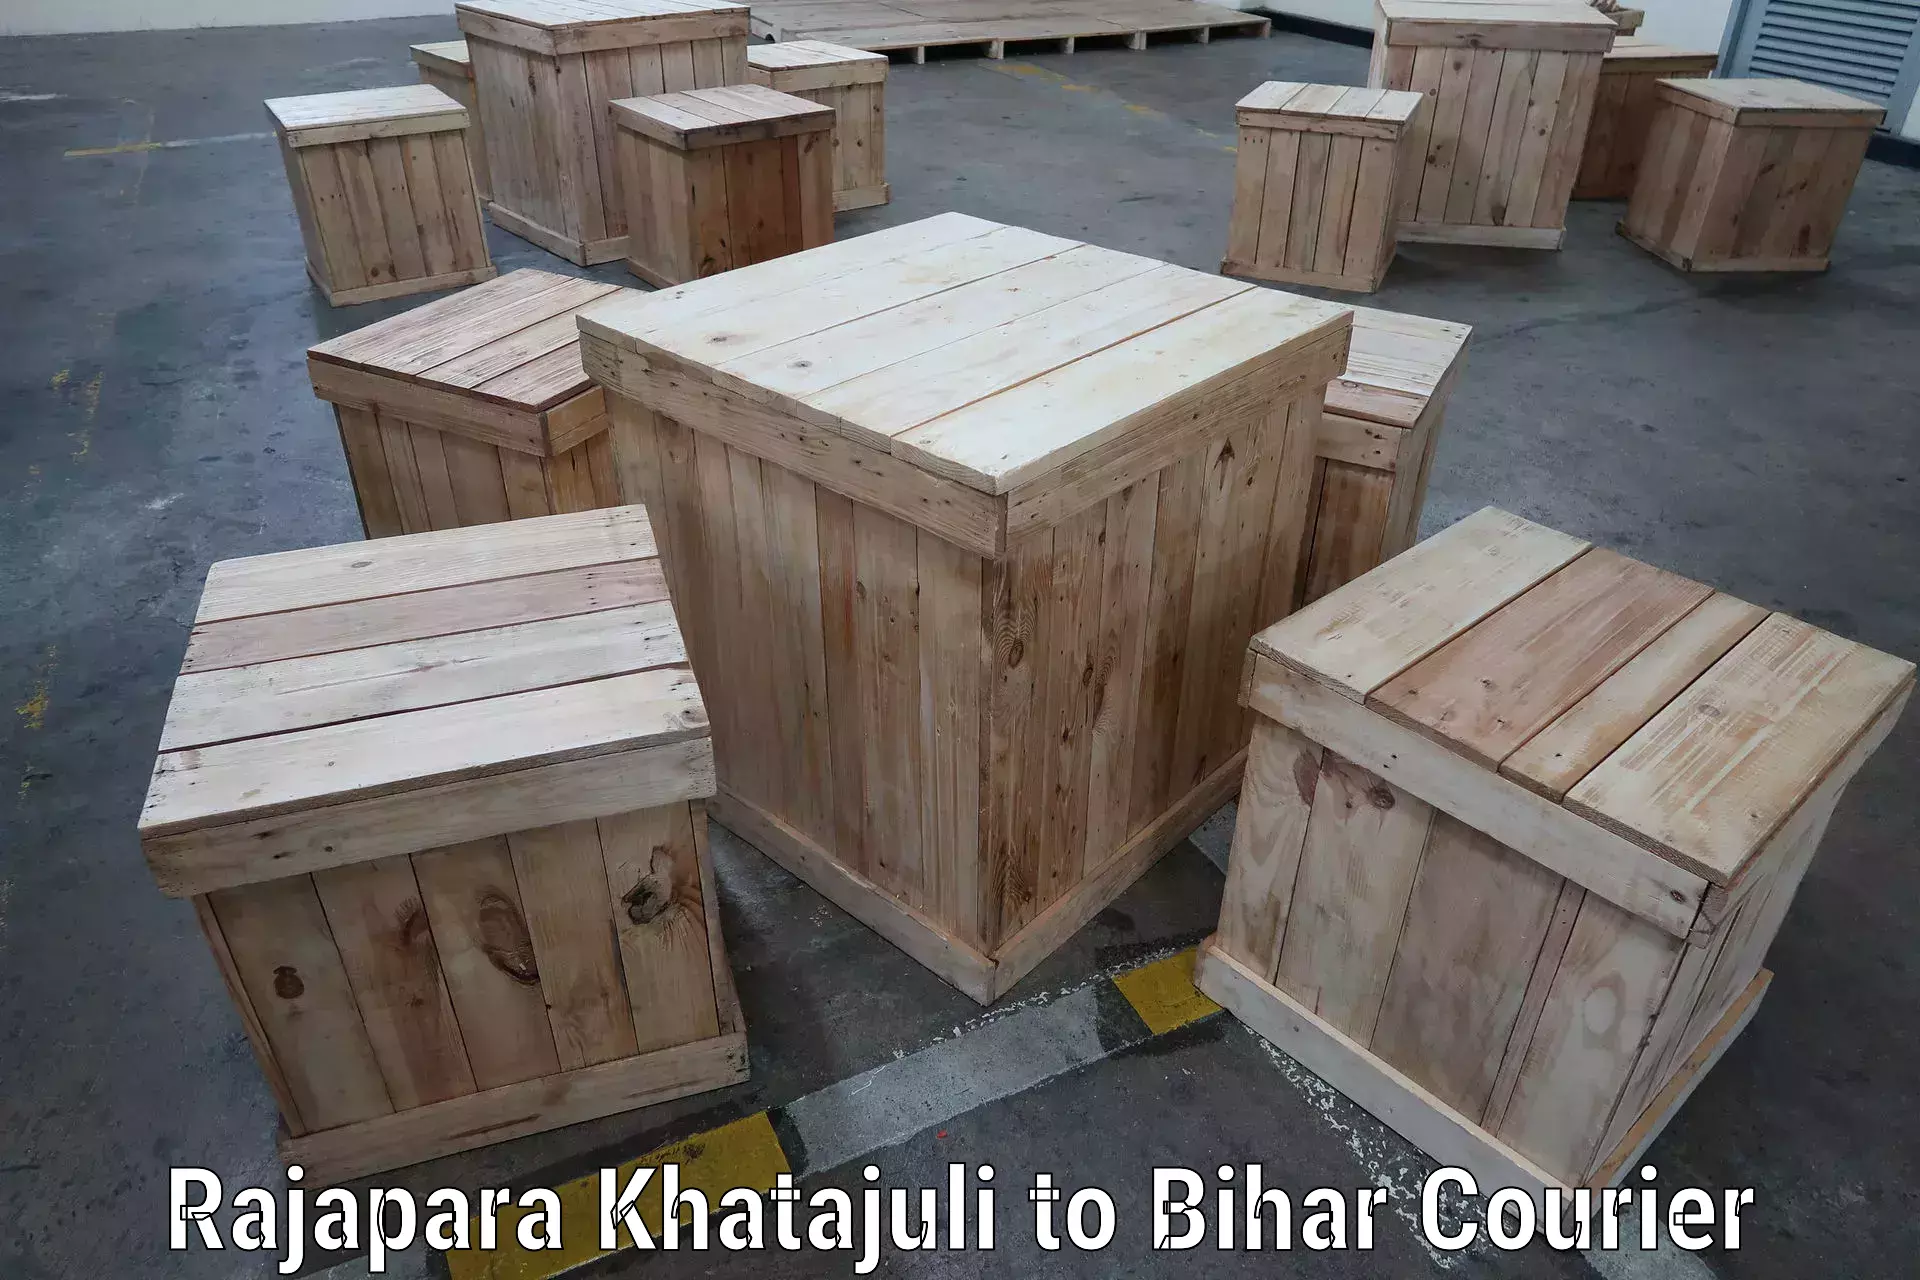 High-capacity parcel service Rajapara Khatajuli to Bihar